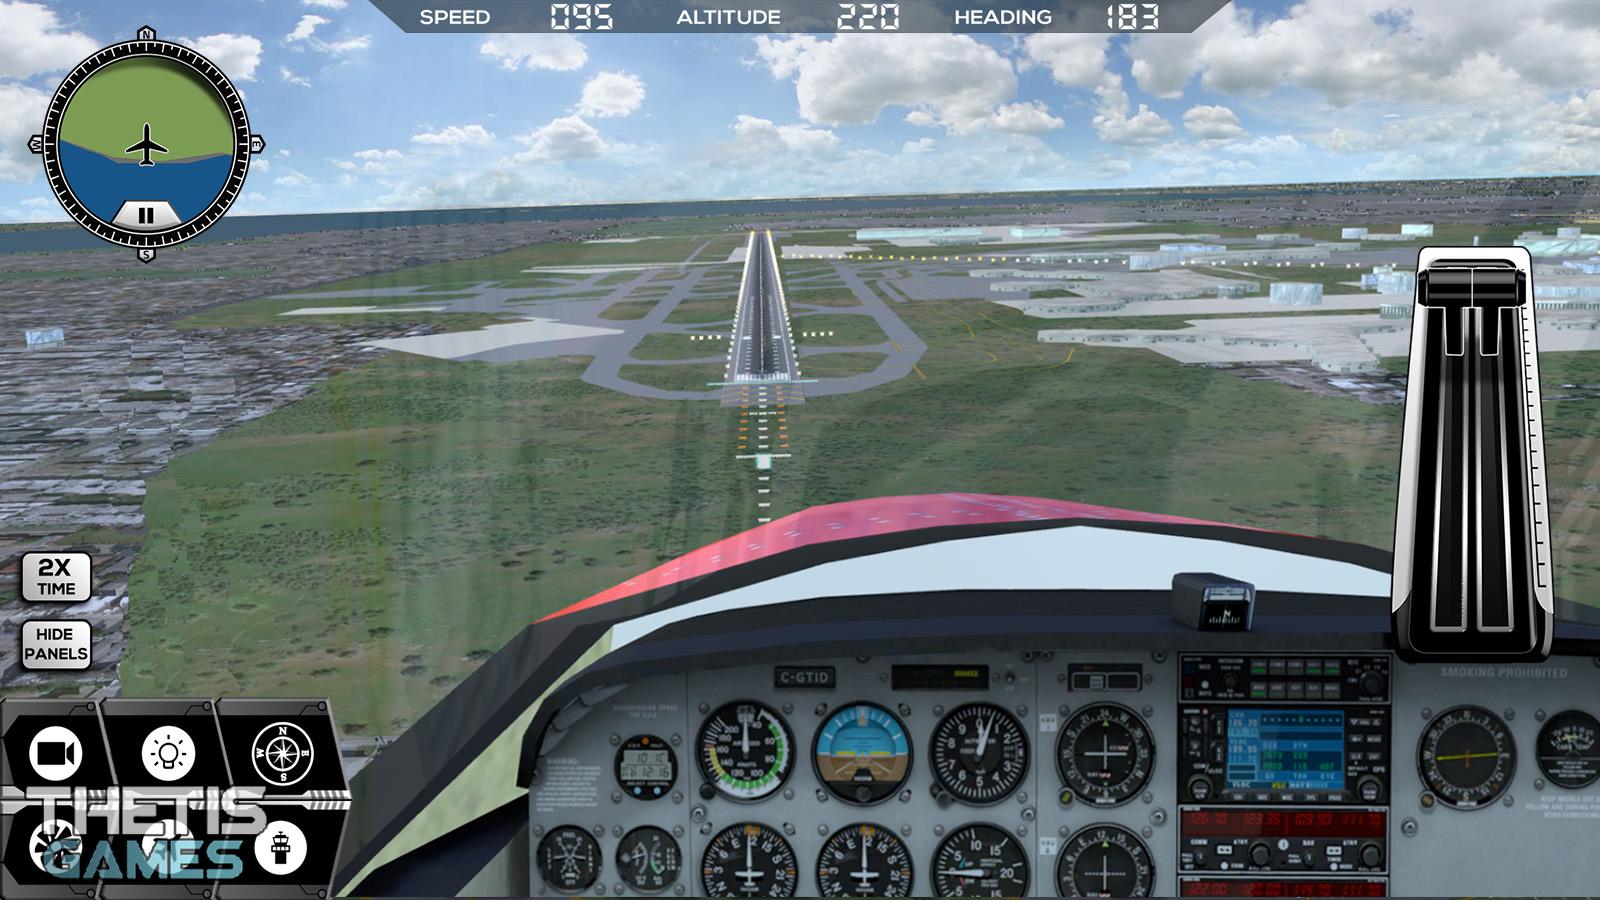 Flight Simulator FlyWings 2017